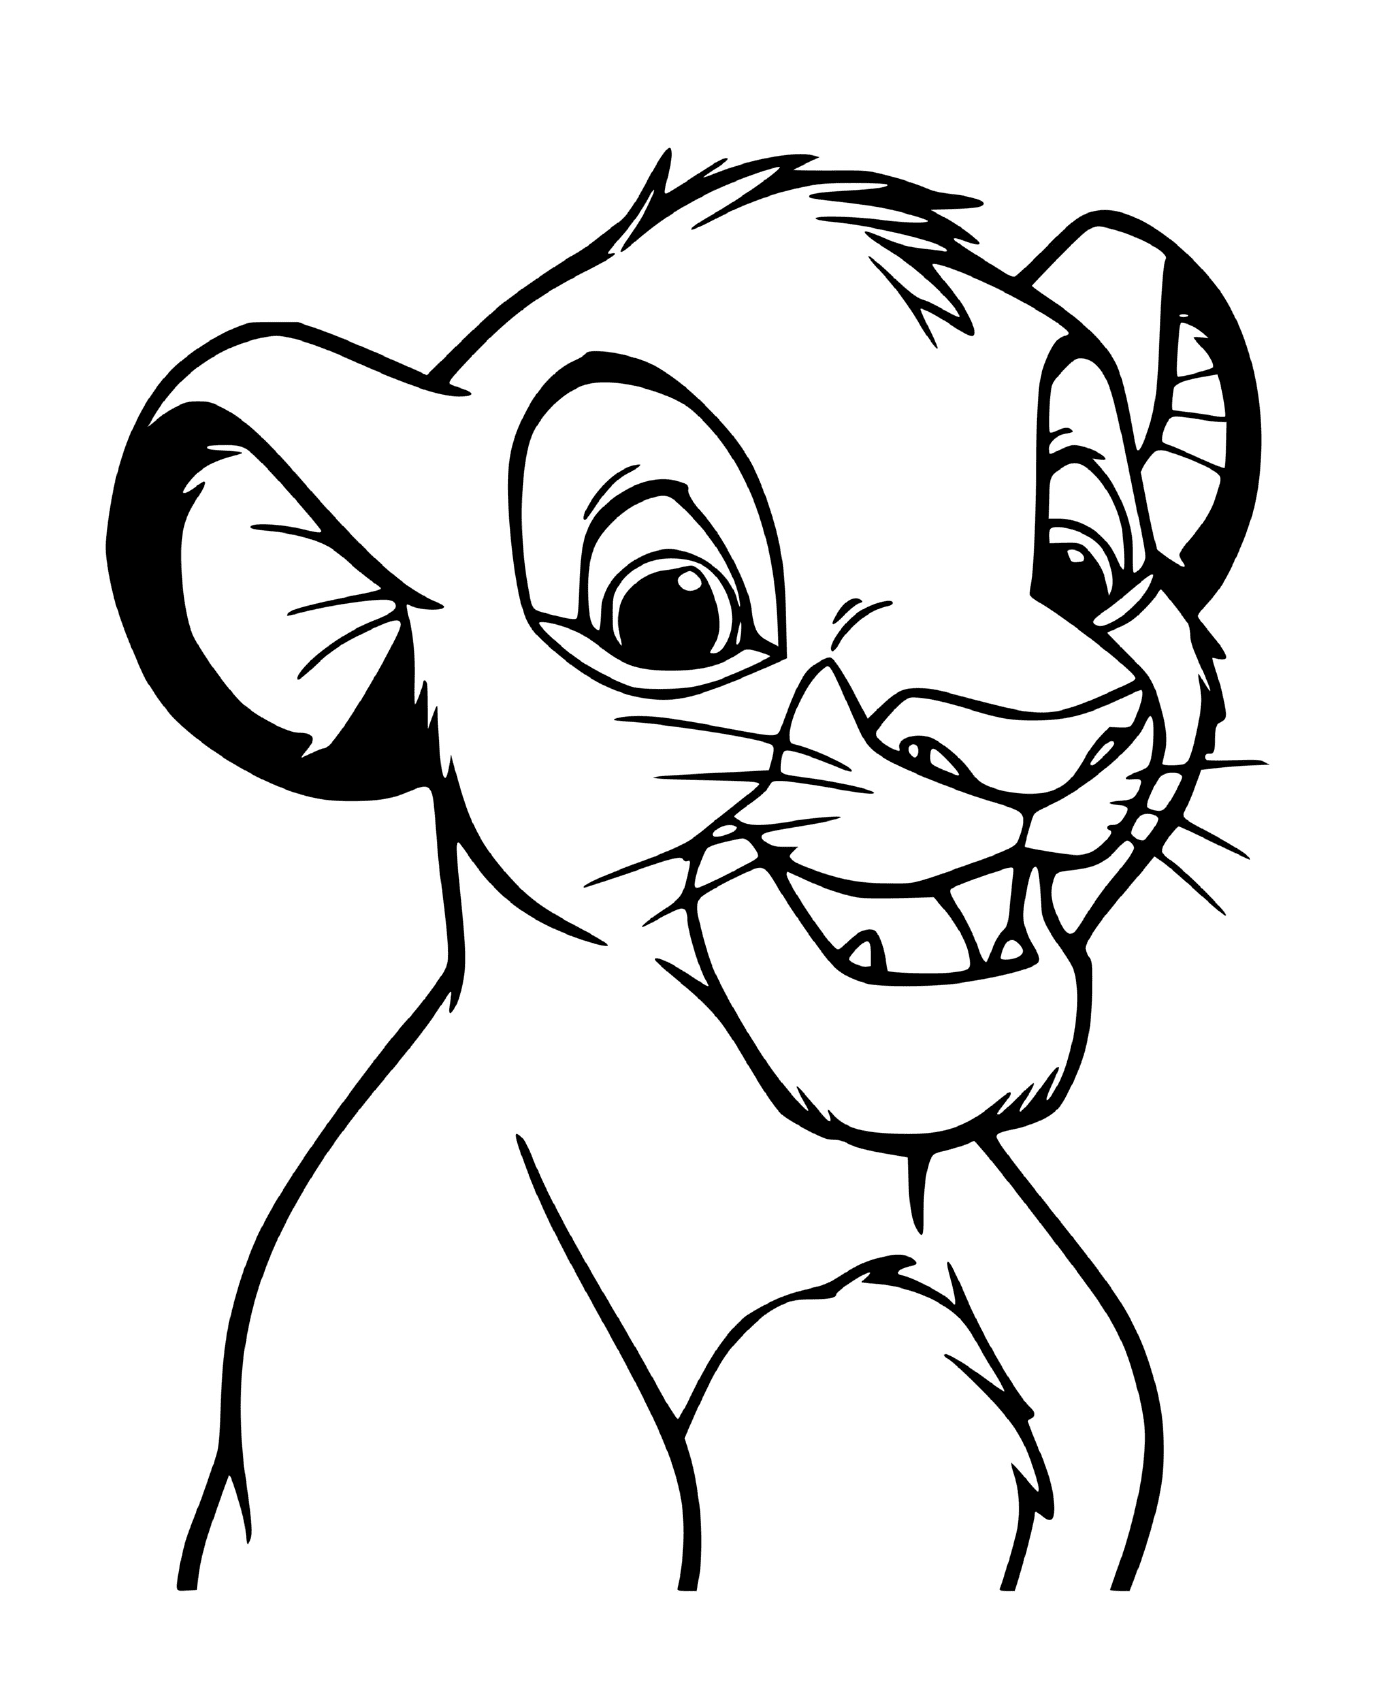   Simba, petit lion joueur 